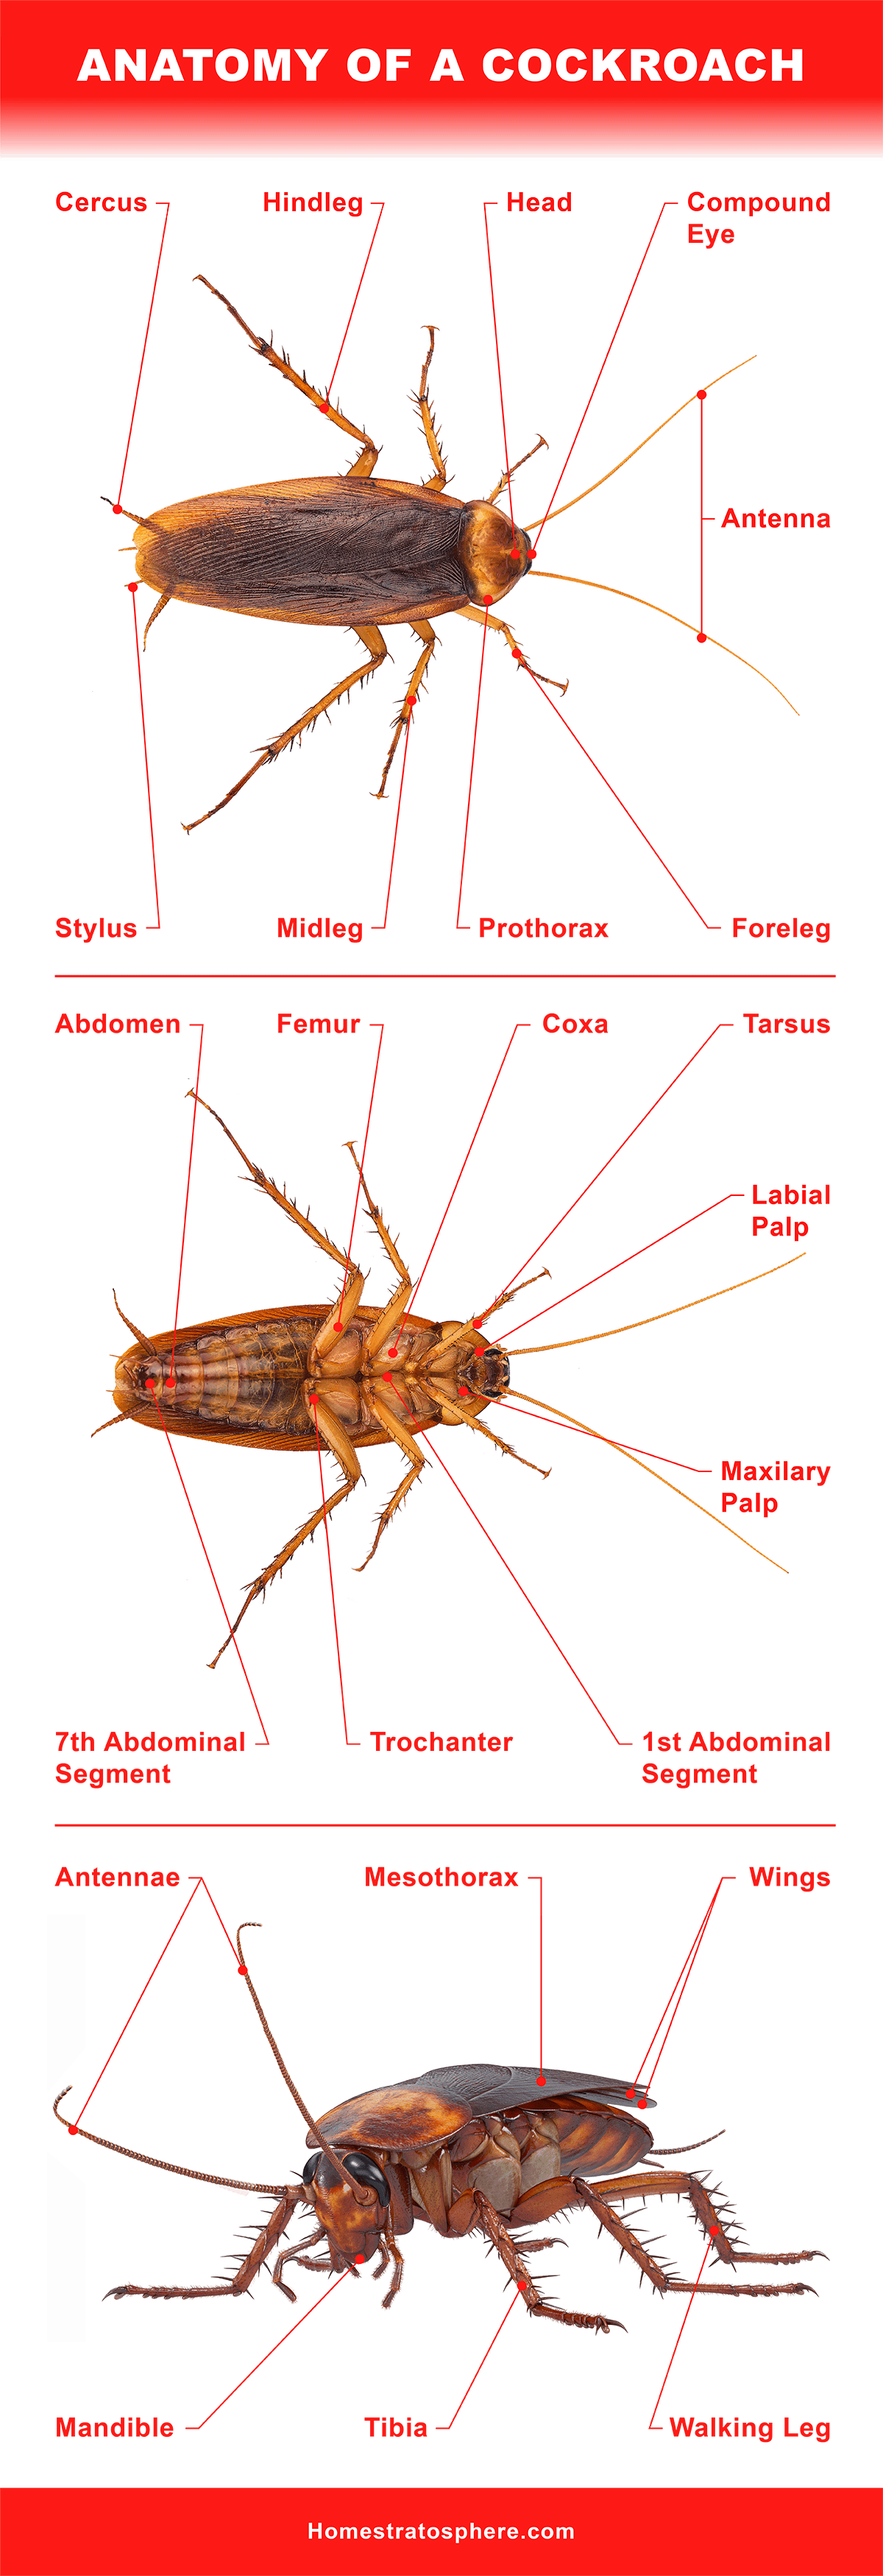 蟑螂的解剖